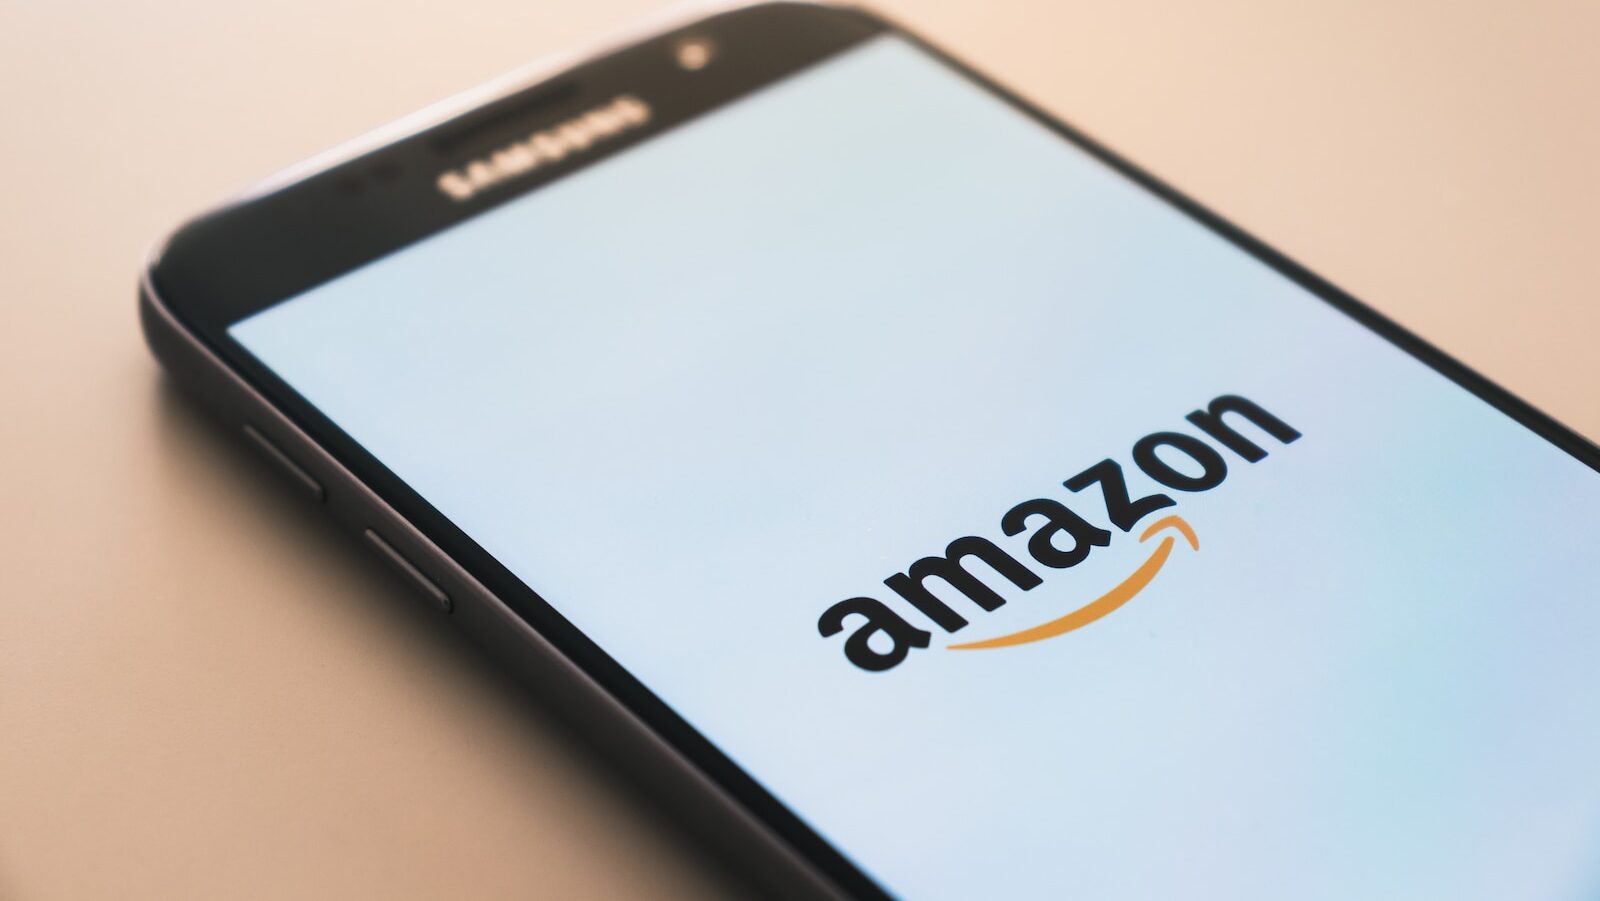 Le logo d'Amazon sur l'écran d'un téléphone cellulaire